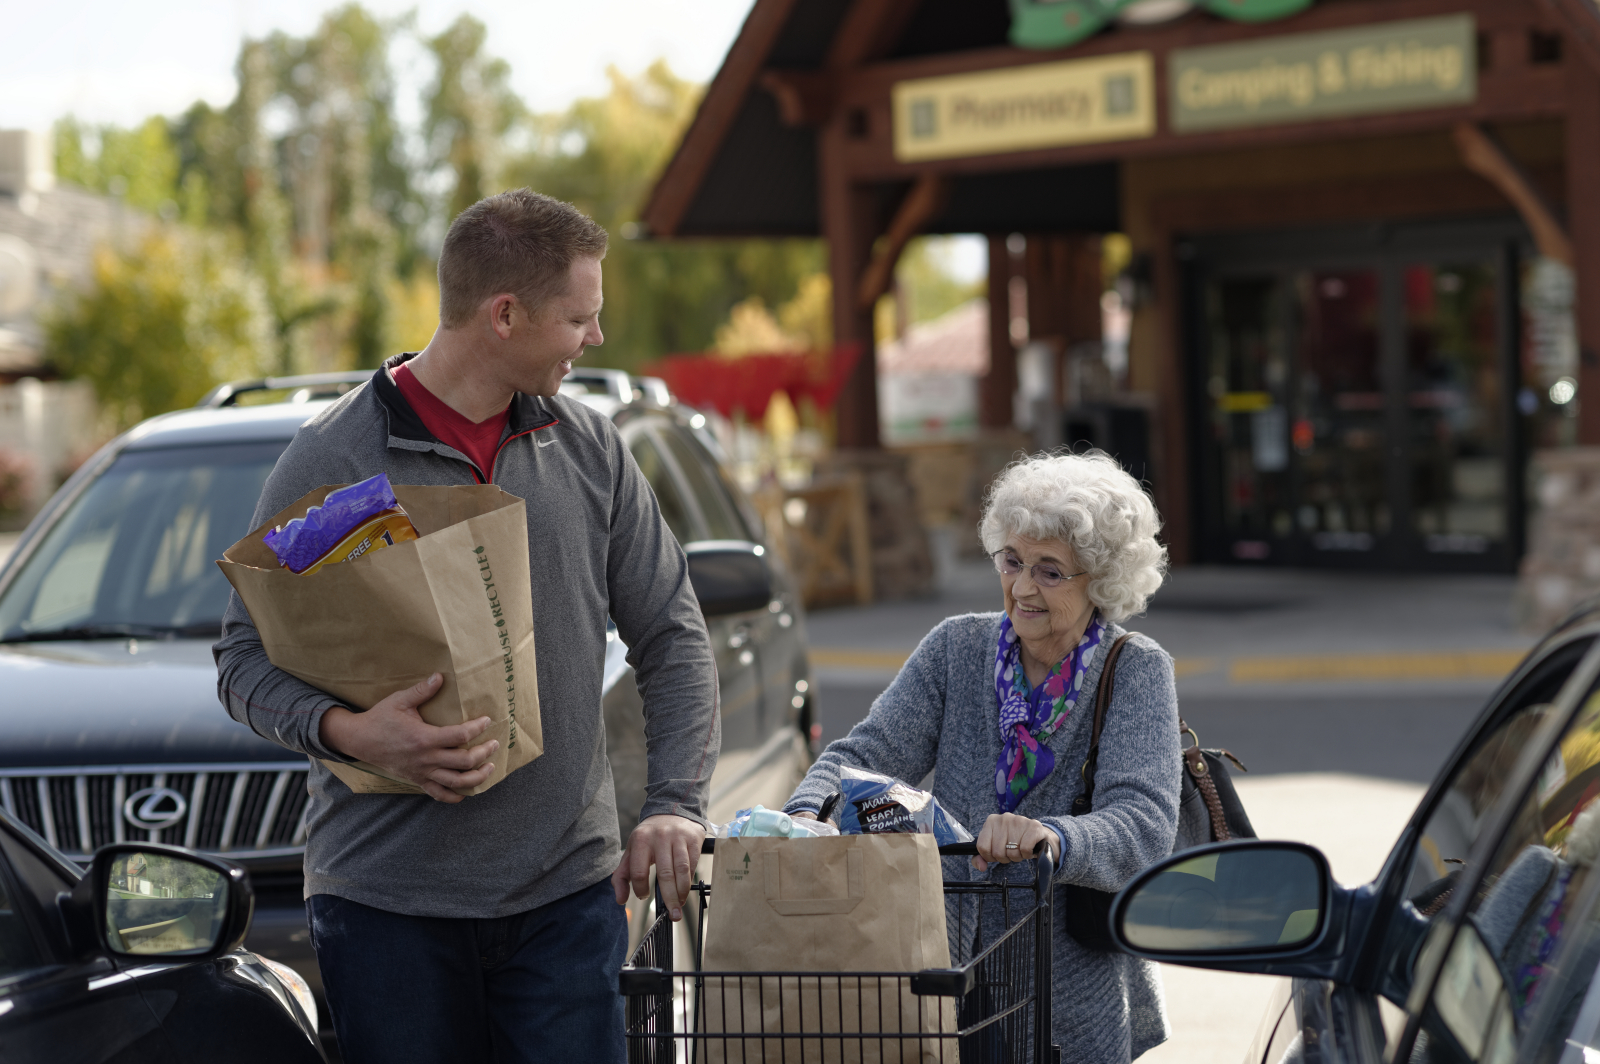 man-helping-elderly-woman-groceries-1176571-print (1).jpg